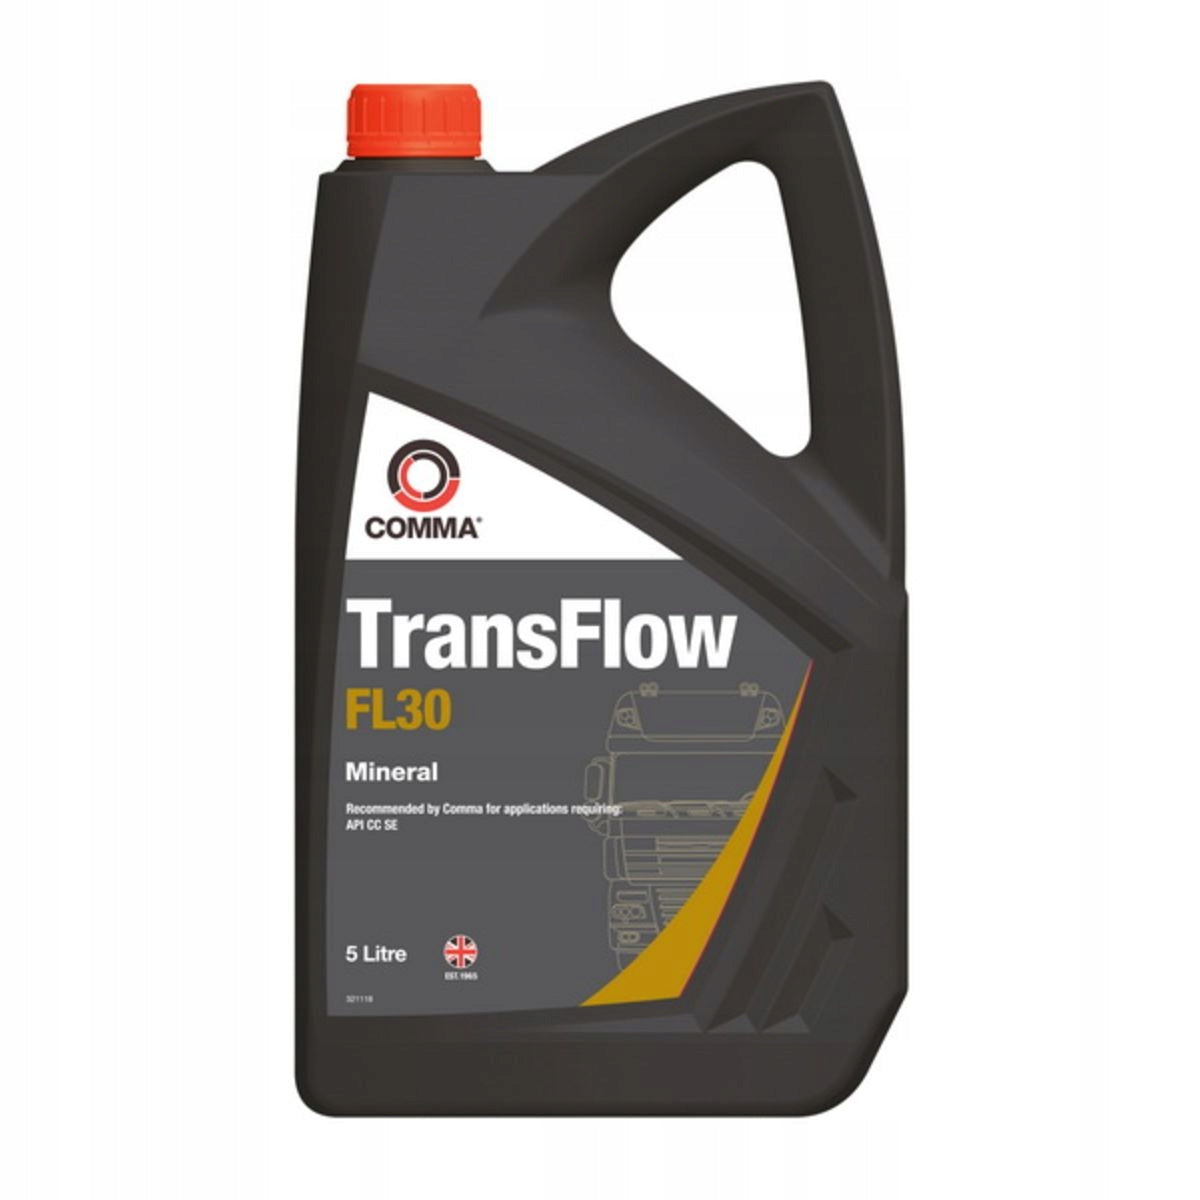 Comma Transflow FL30 olje, 5L